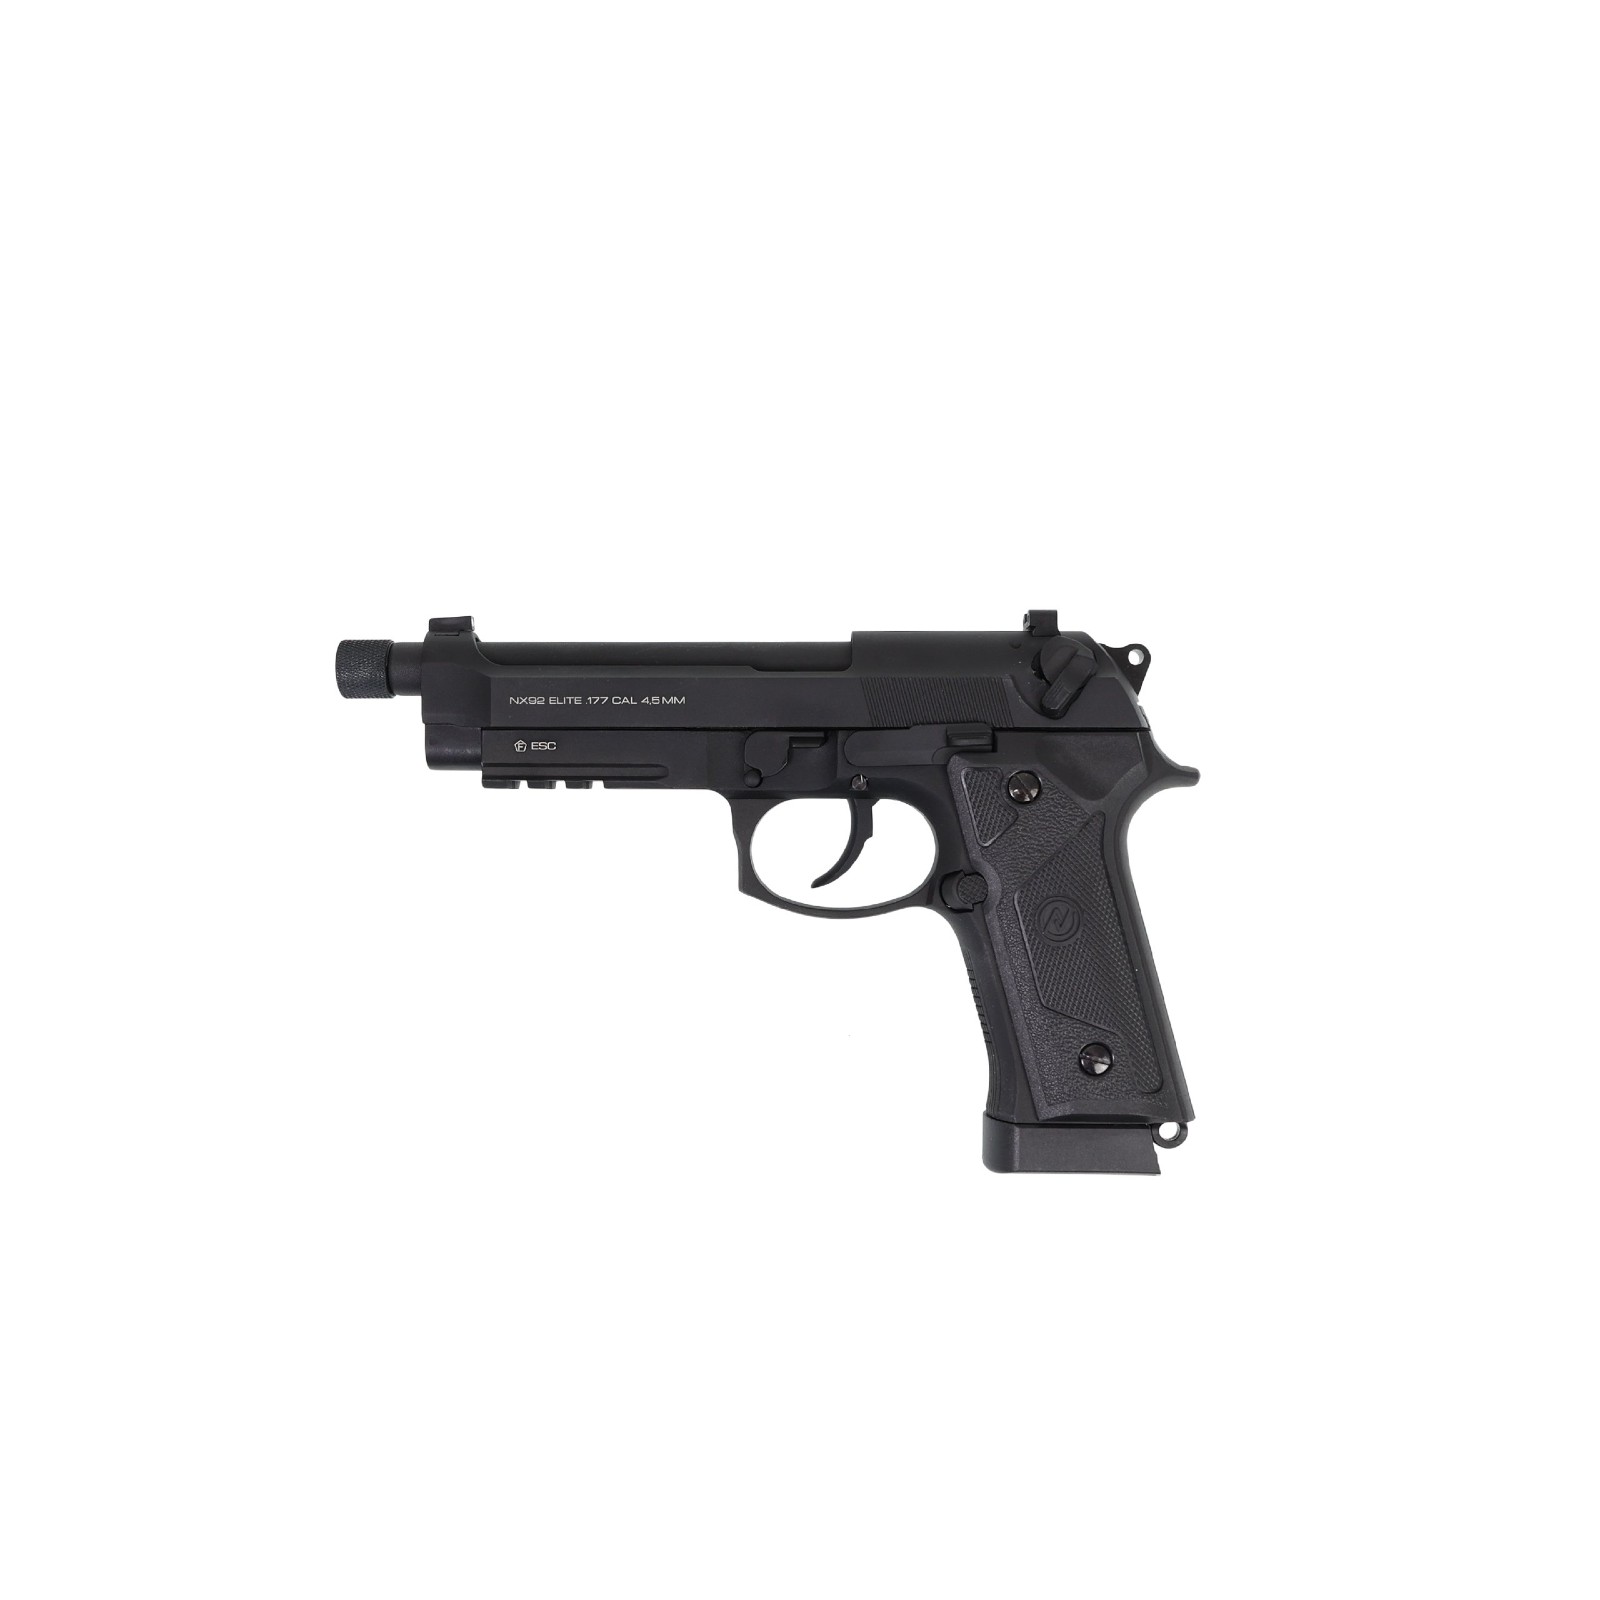 Air pistol-NX92EliteTacticalblack-BlowBack-Co2-System-Cal.45mmBB-1.jpeg